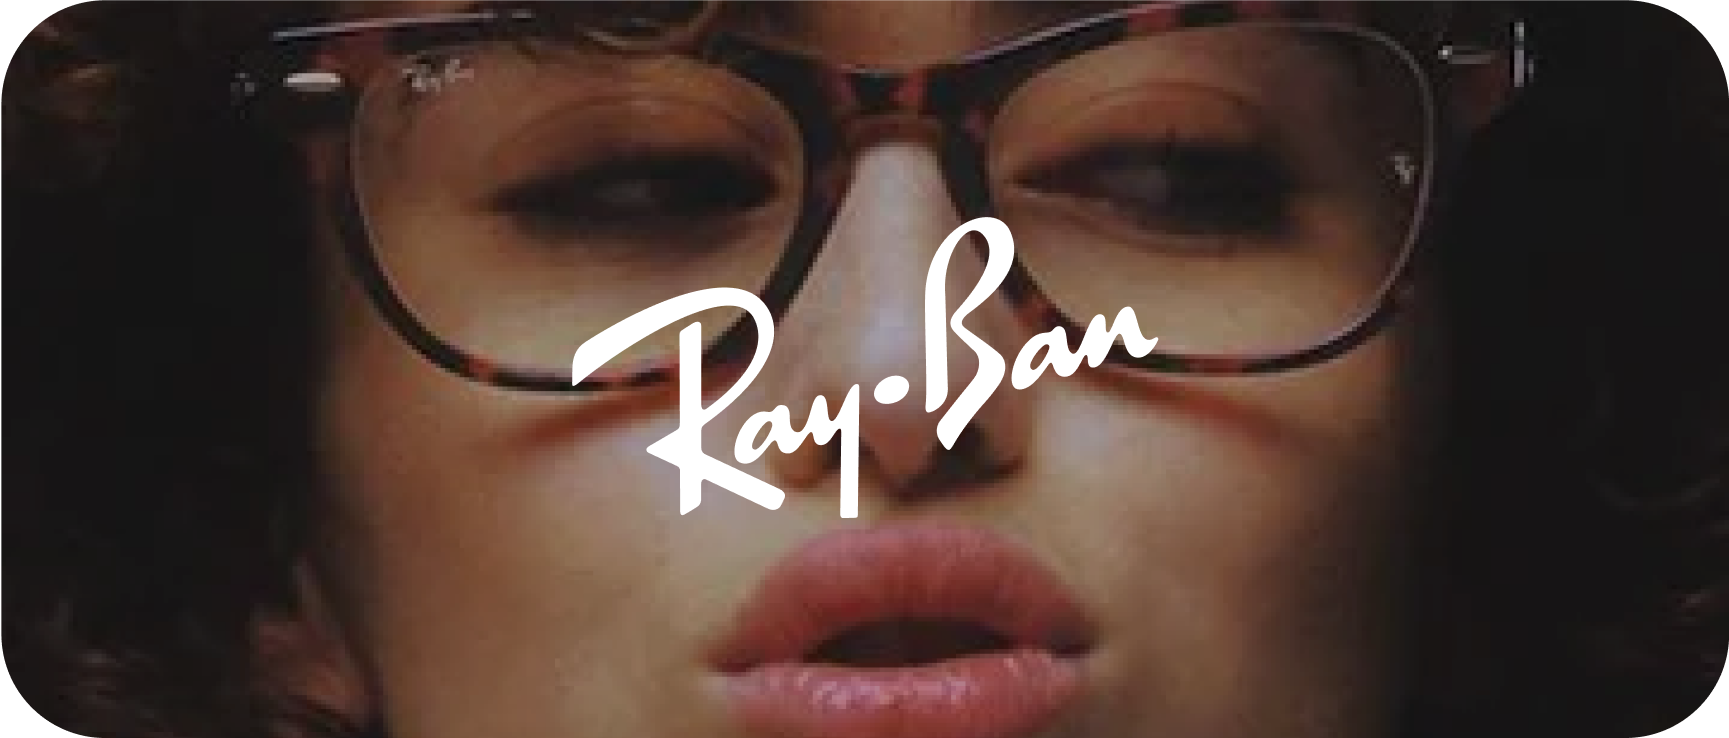 Ray-Ban Image